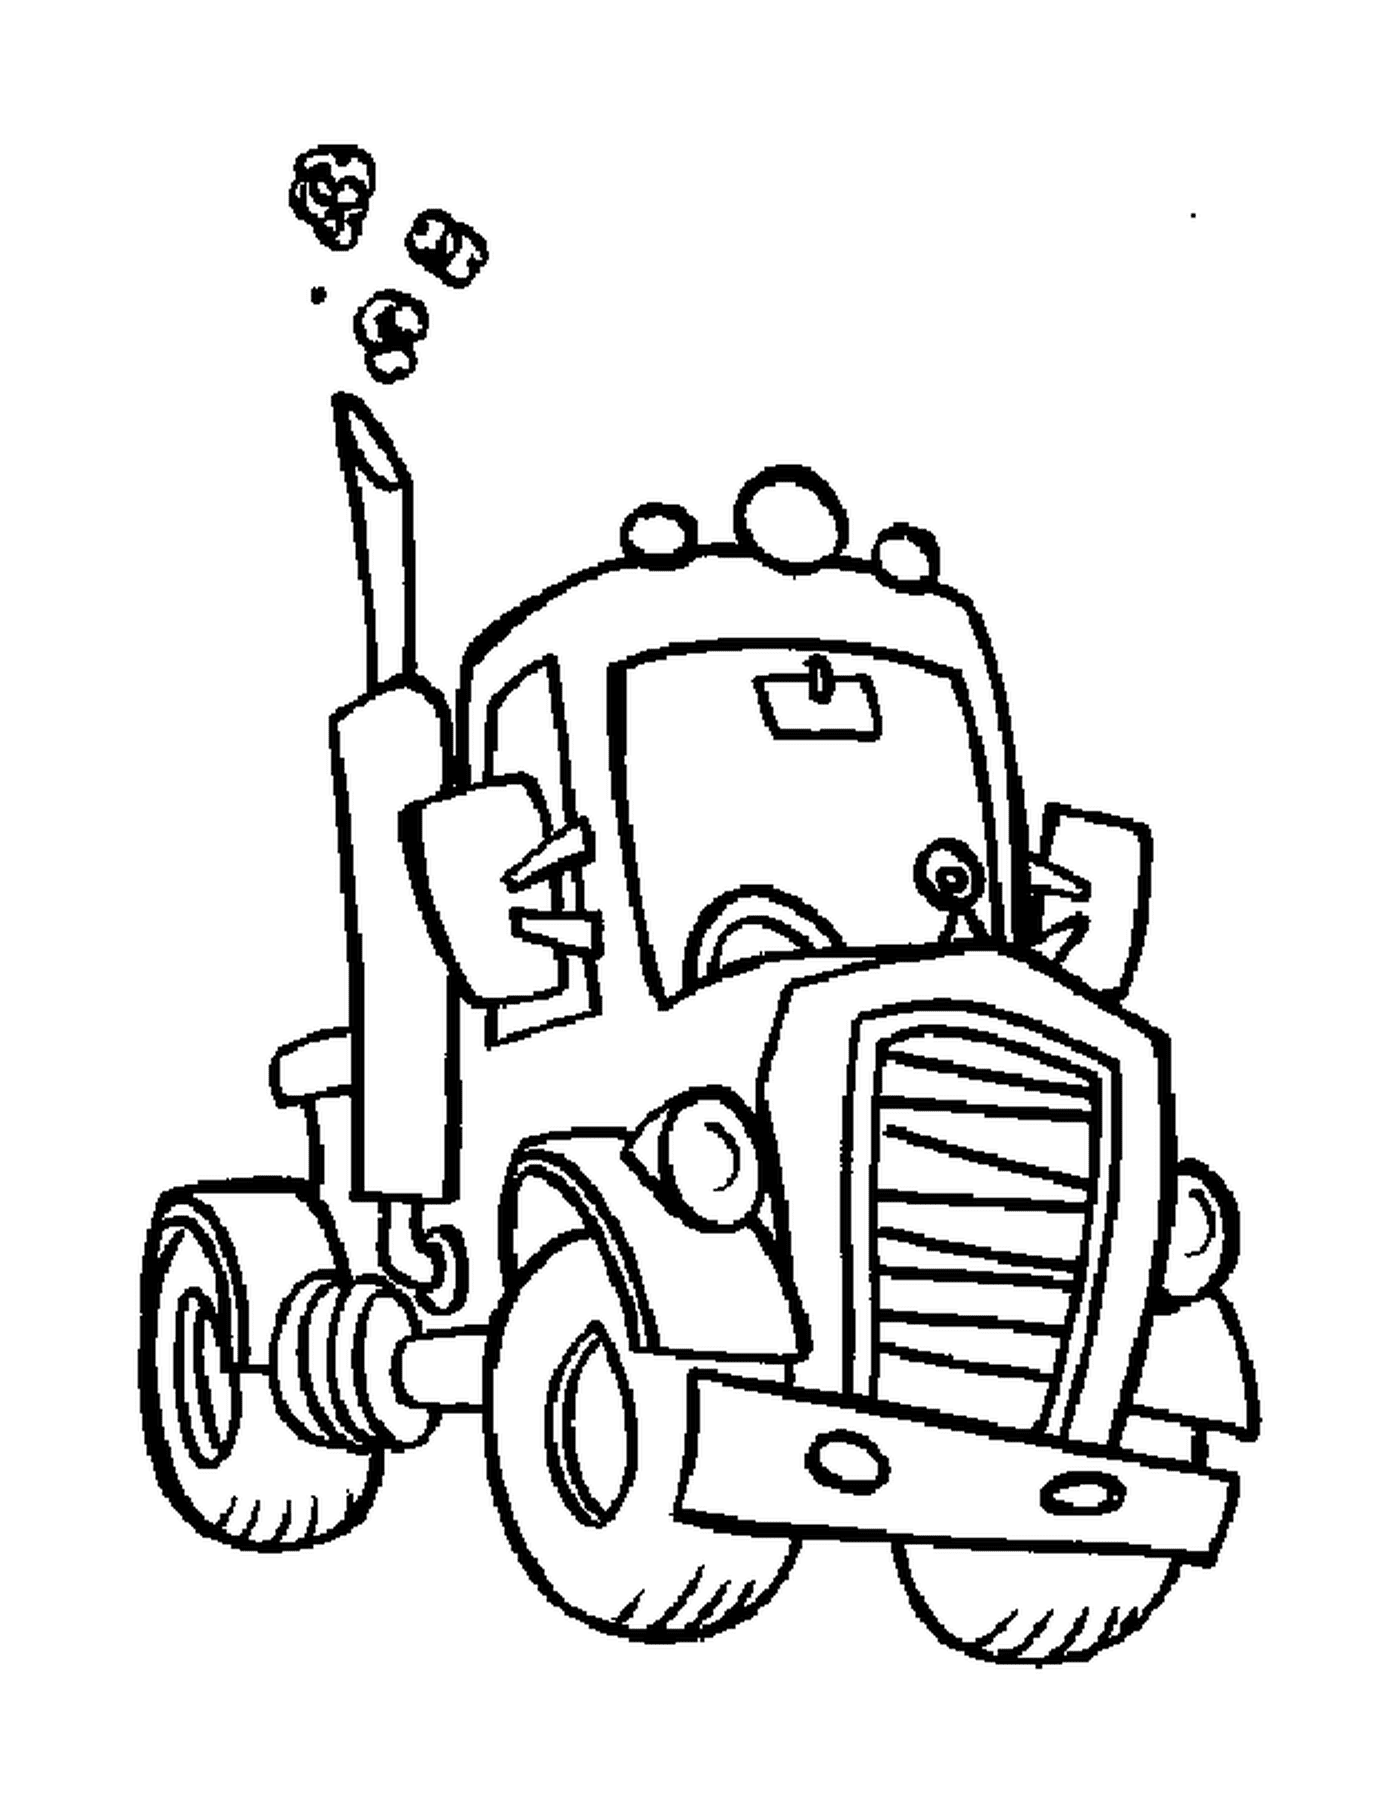  A drawn truck 